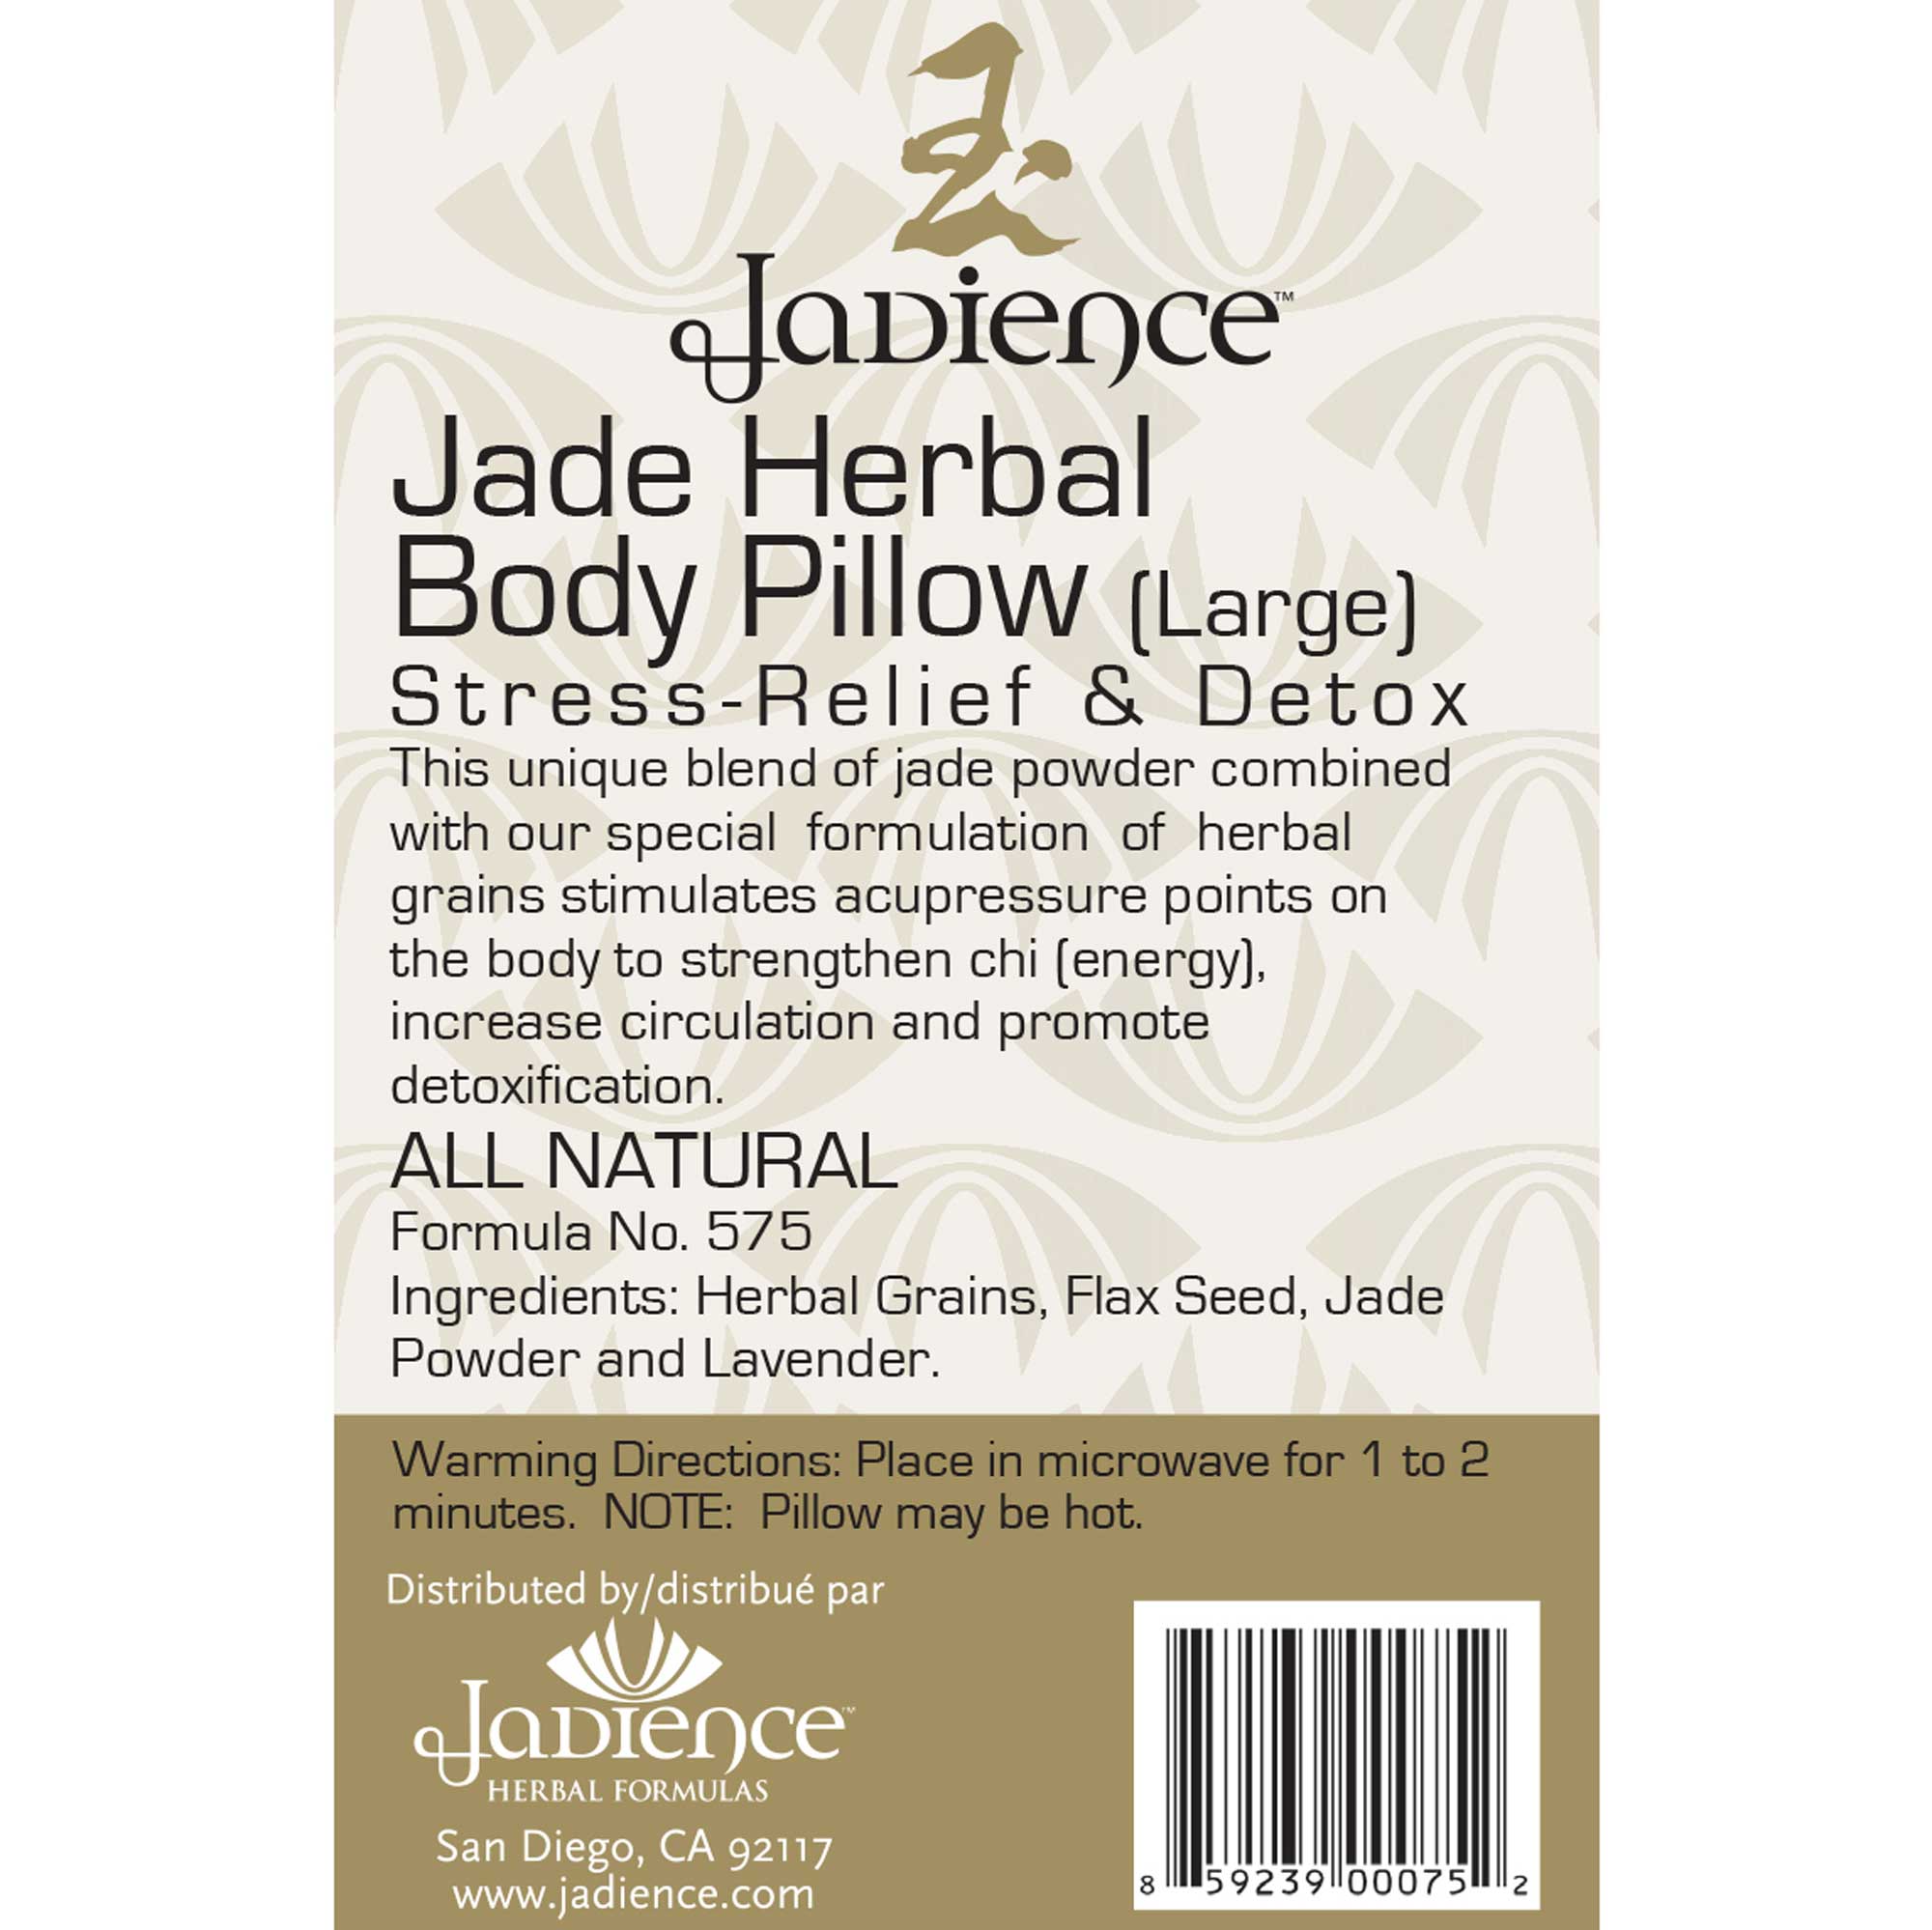 Jadience Herbal Formulas Jade Herbal Body Pillow Ingredients